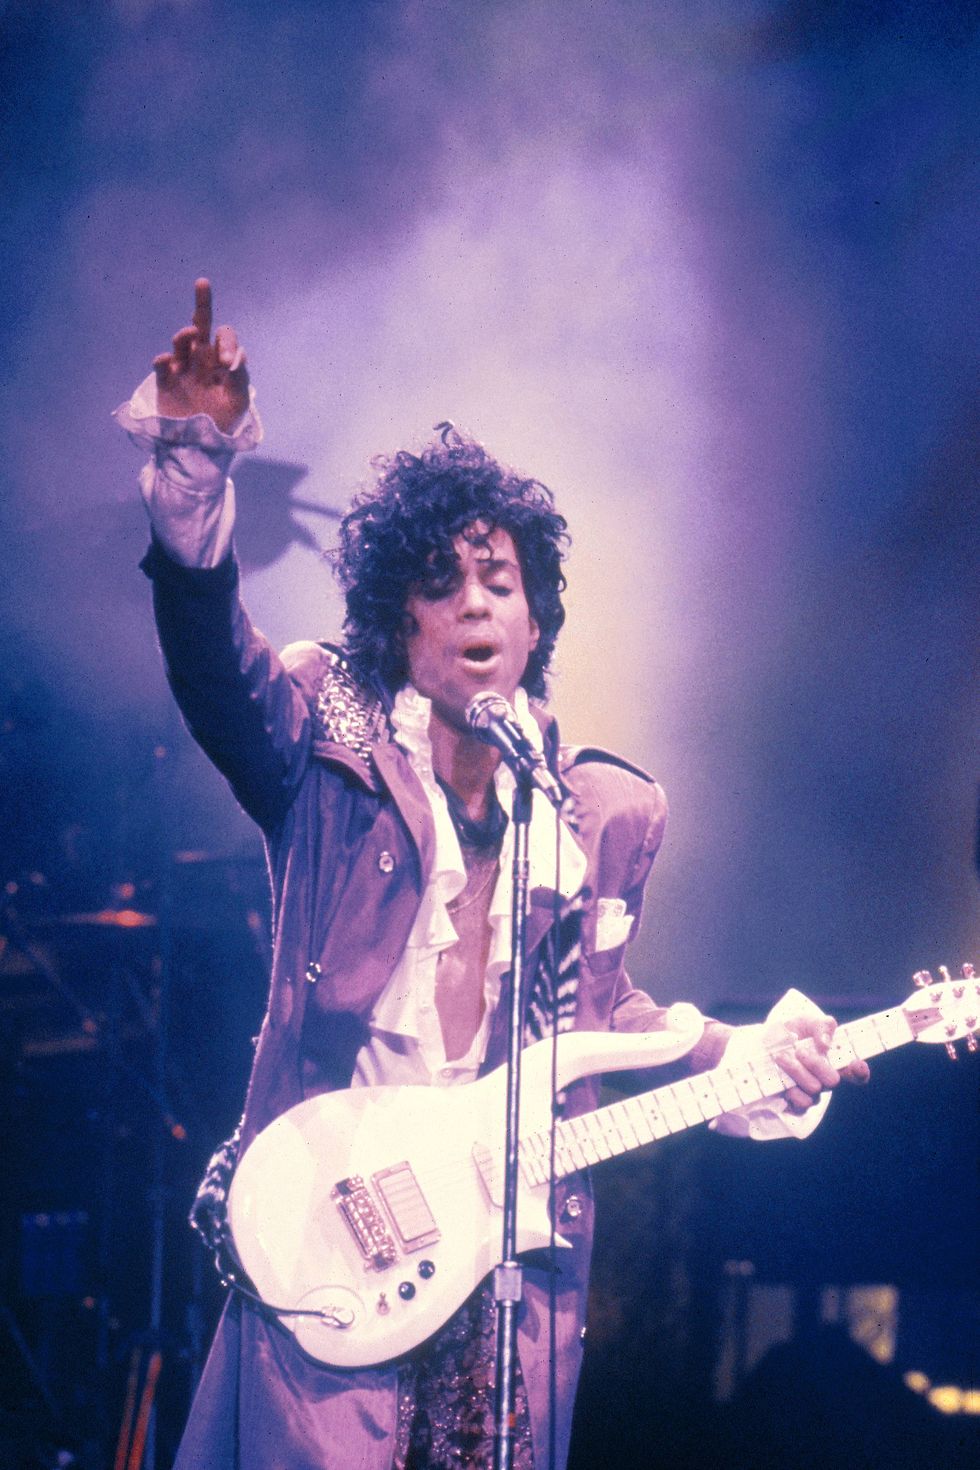 <p>Prince is zo iconisch, dat weet iedereen. hij won&nbsp;32 Grammy-nominaties en won daar zeven van. Helaas overleed hij veel te vroeg aan een overdosis.</p>